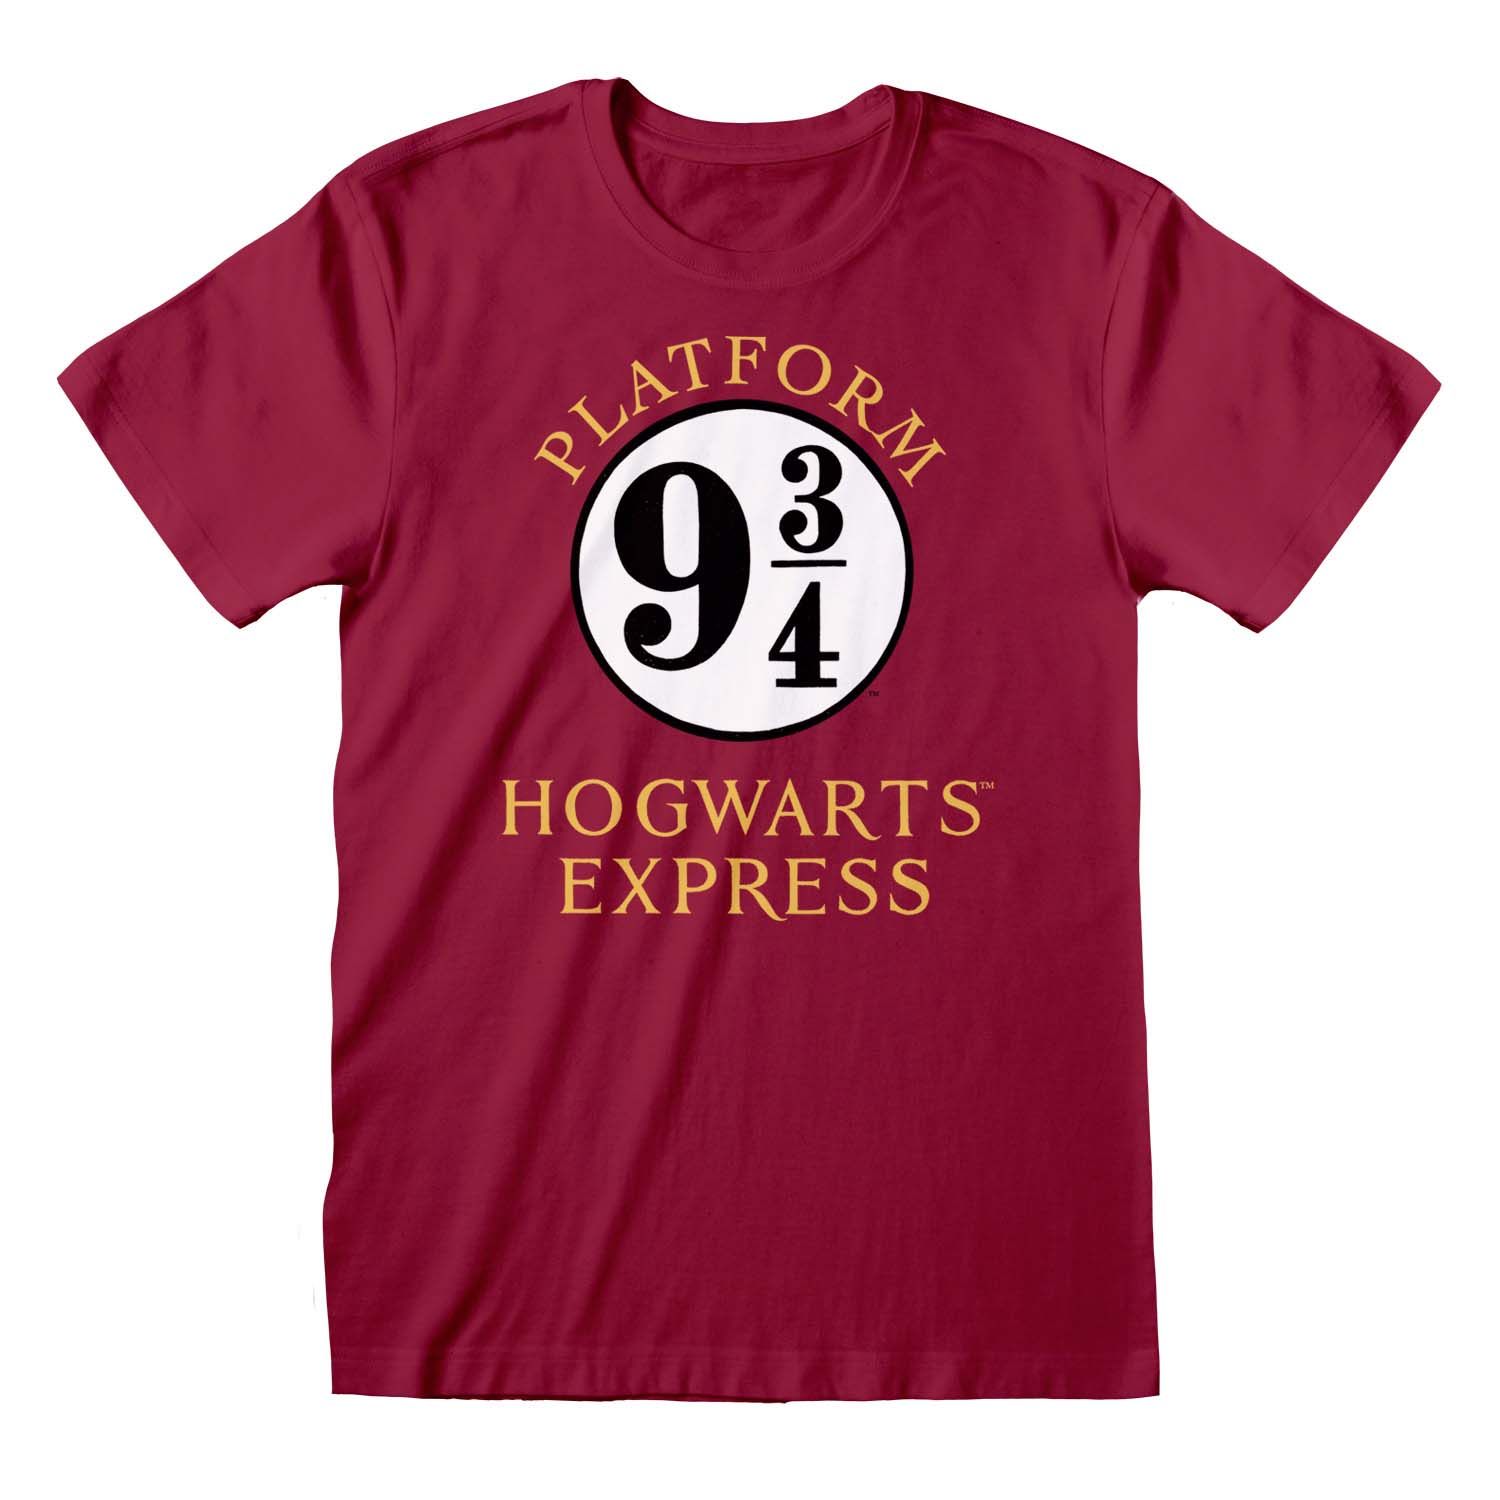 Harry Potter: Platform Express - 3/4 T-Shirt Hogwarts Merchoid 9